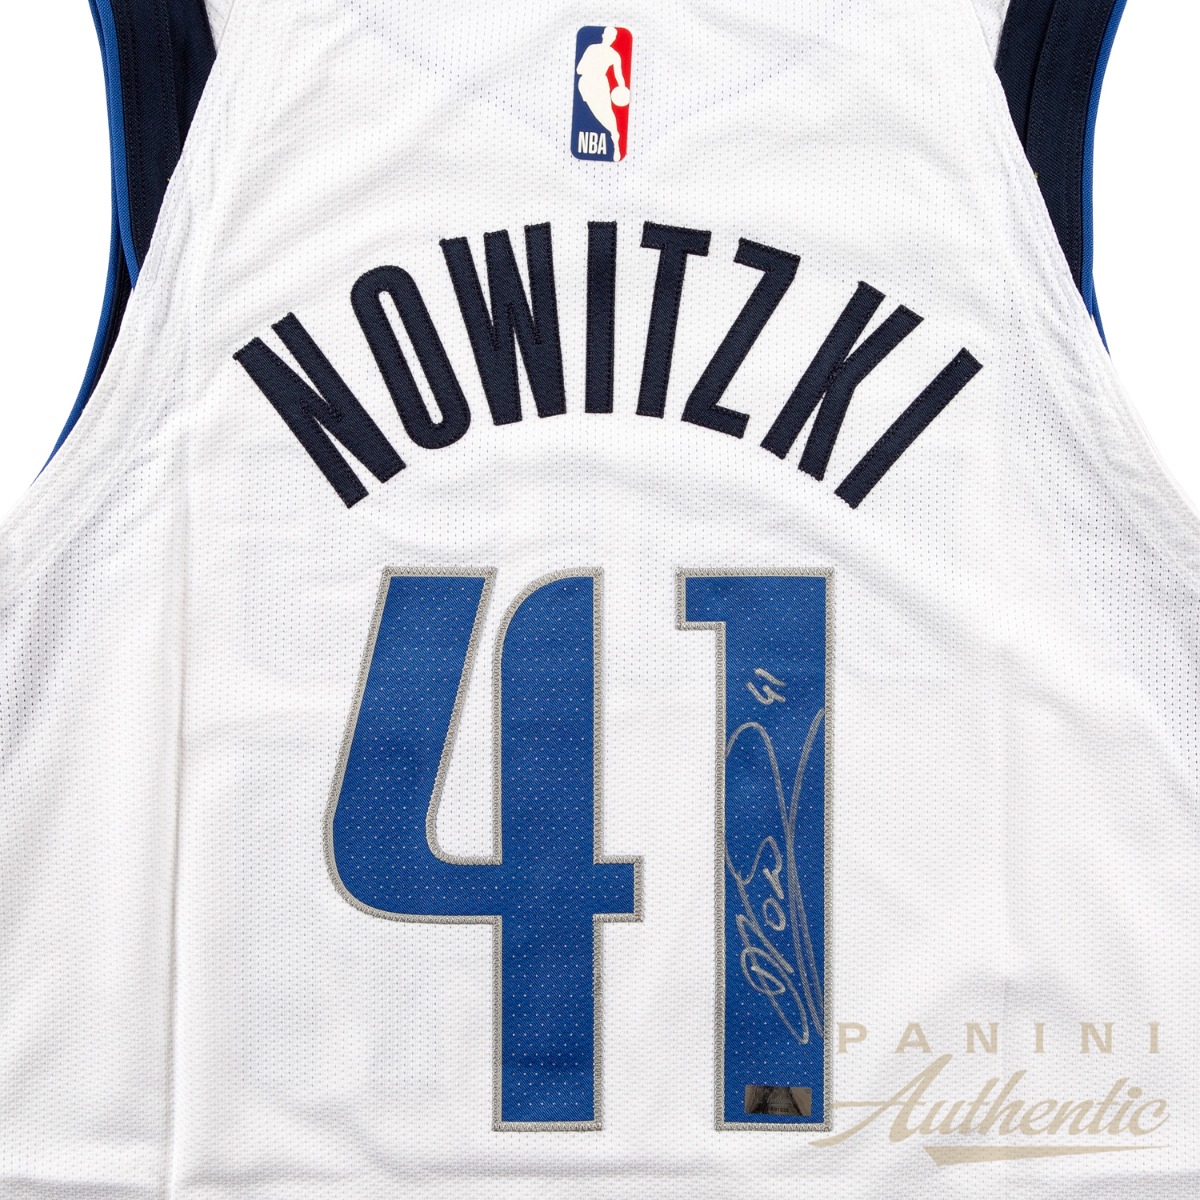 nowitzki signed jersey